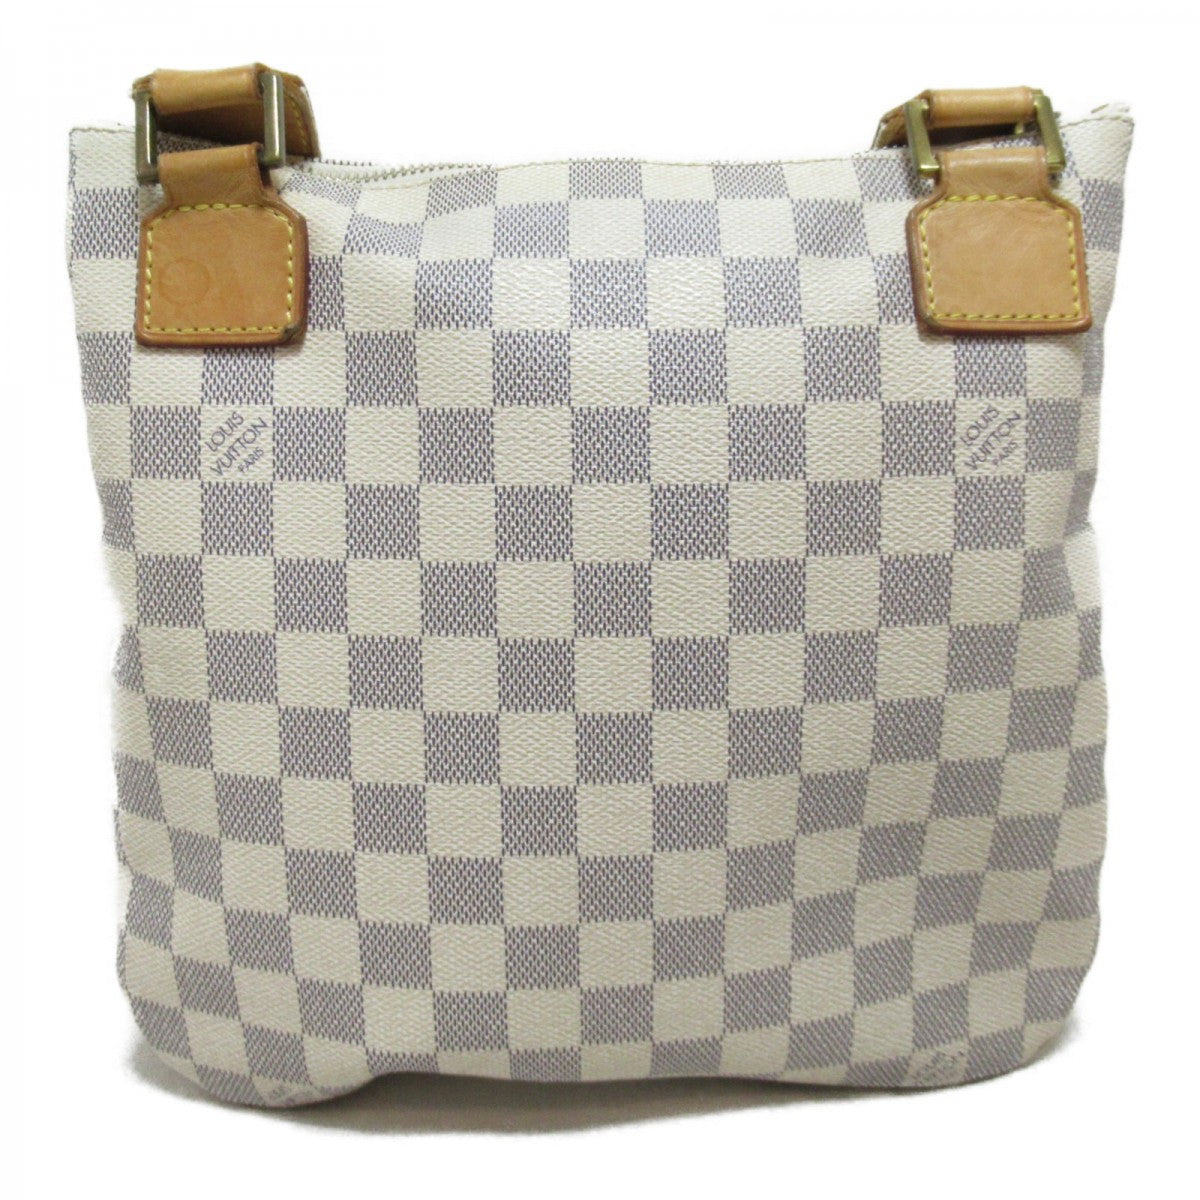 LOUIS VUITTON Pochette Bosphore Shoulder Bag N51112 Damier Azur